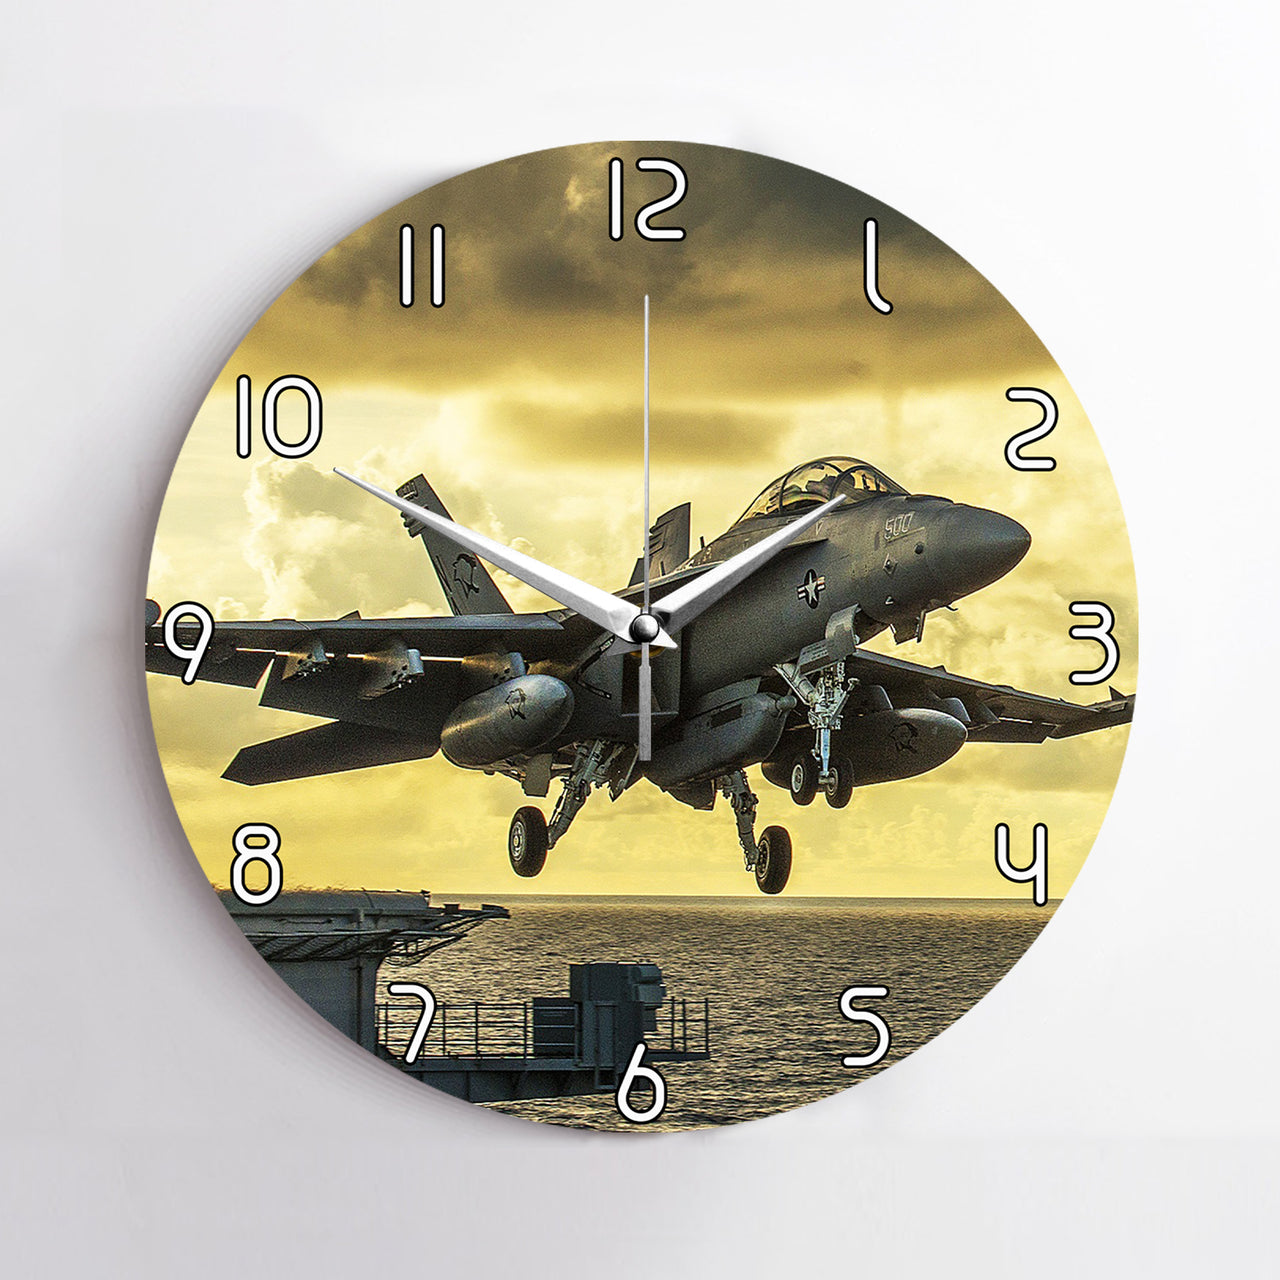 Departing Jet Aircraft Printed Wall Clocks